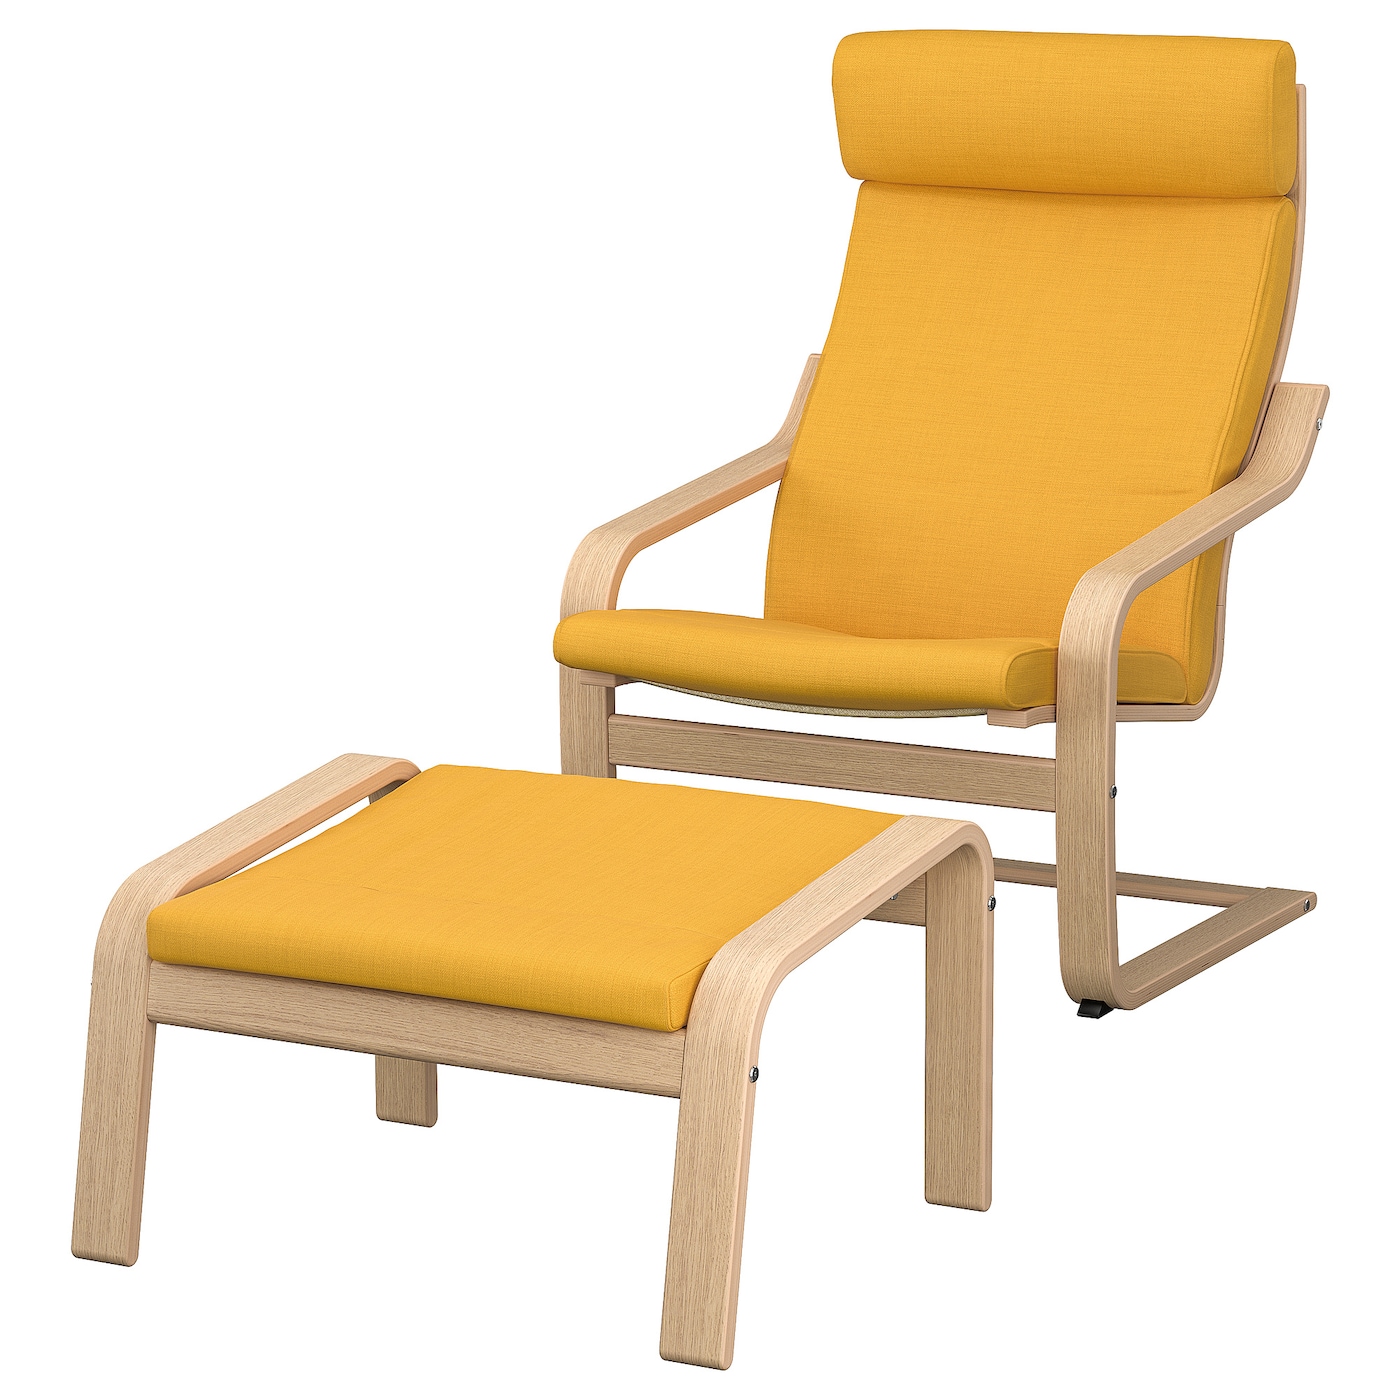 ПОЭНГ Кресло и подставка для ног, дубовый шпон светлый/Скифтебо желтый POÄNG IKEA